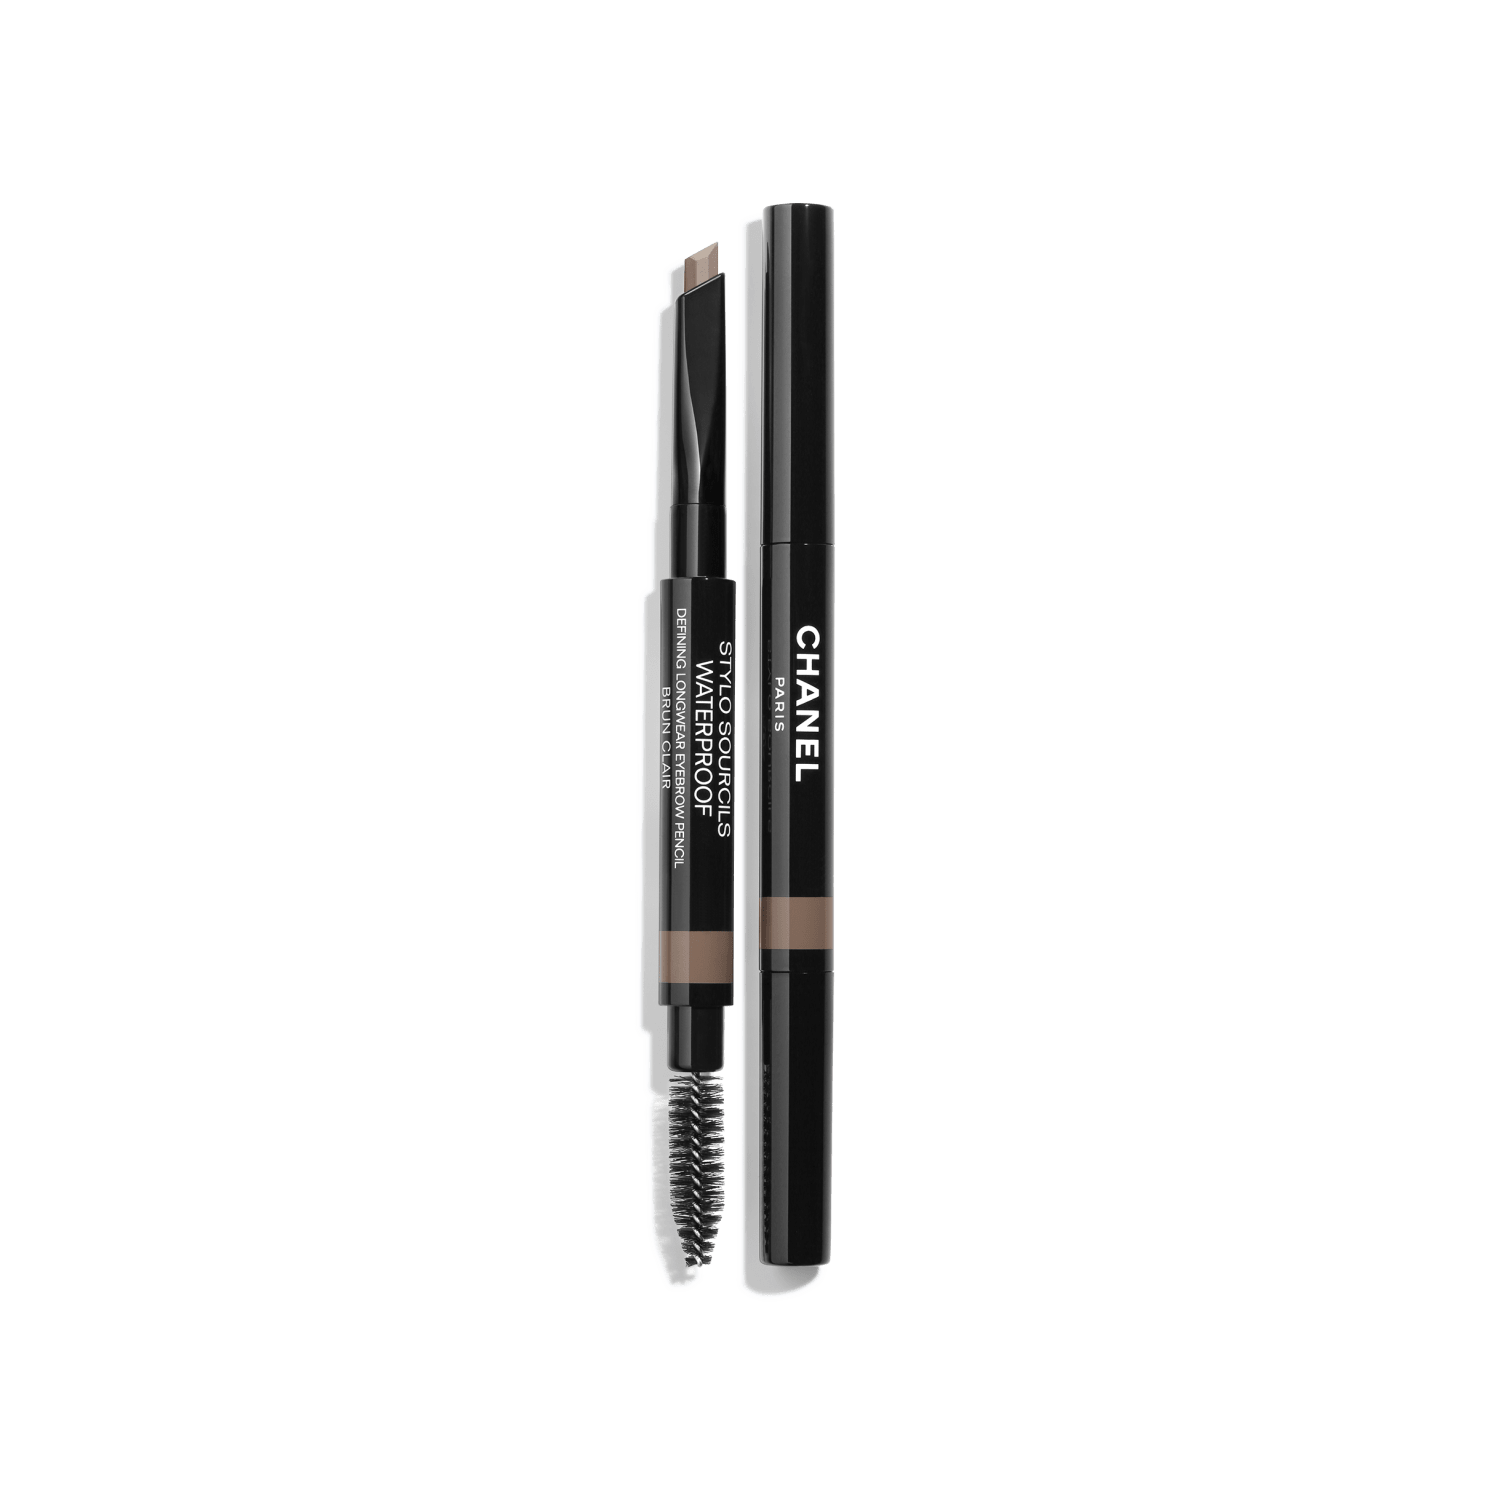 Chanel Defining Waterproof Longwear Eyebrow Pencil